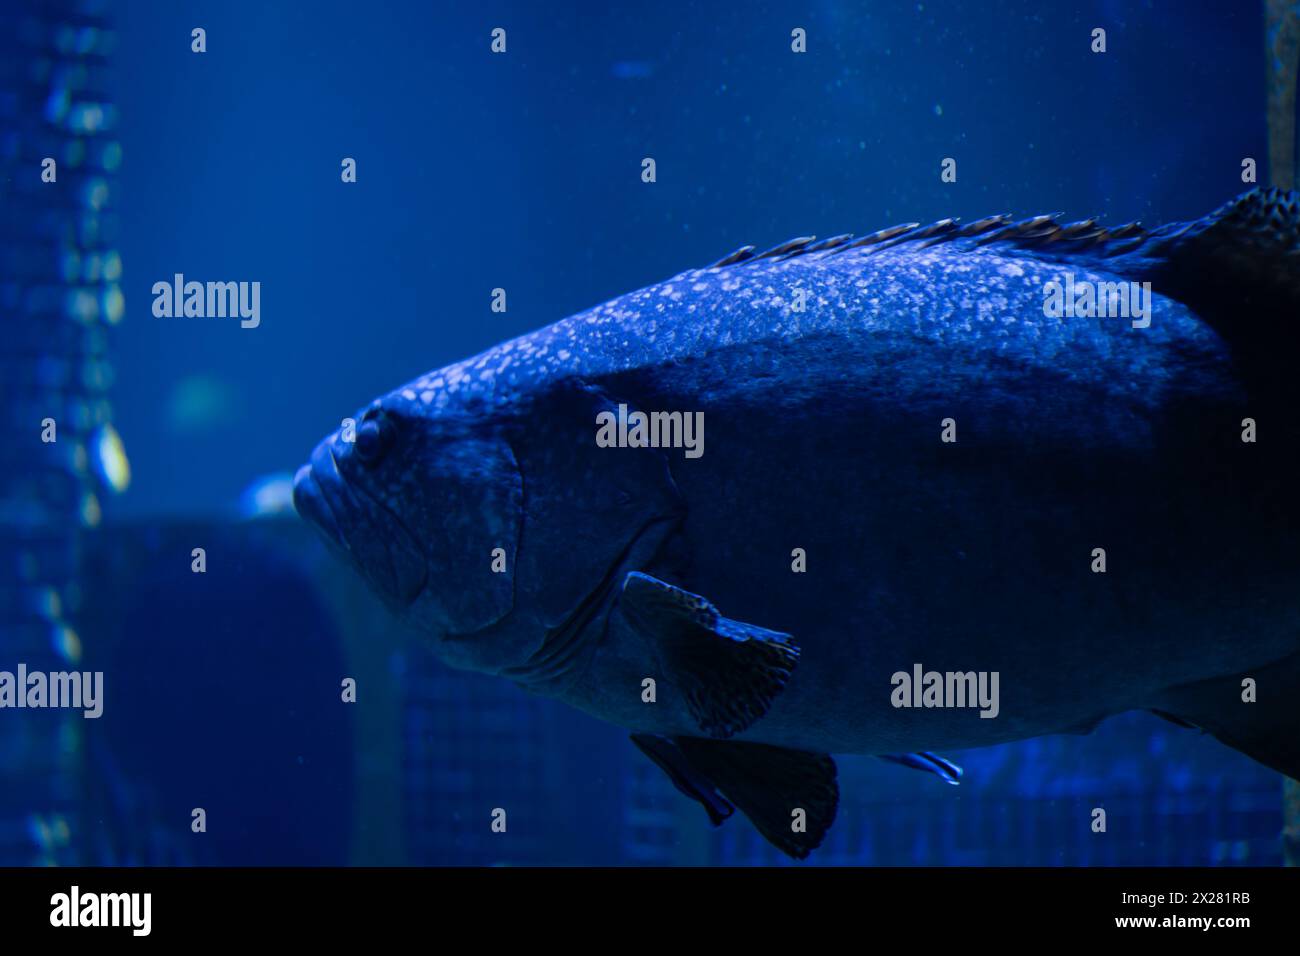 Blurred images of giant grouper fish for background. Giant grouper (Epinephelus lanceolatus). Stock Photo